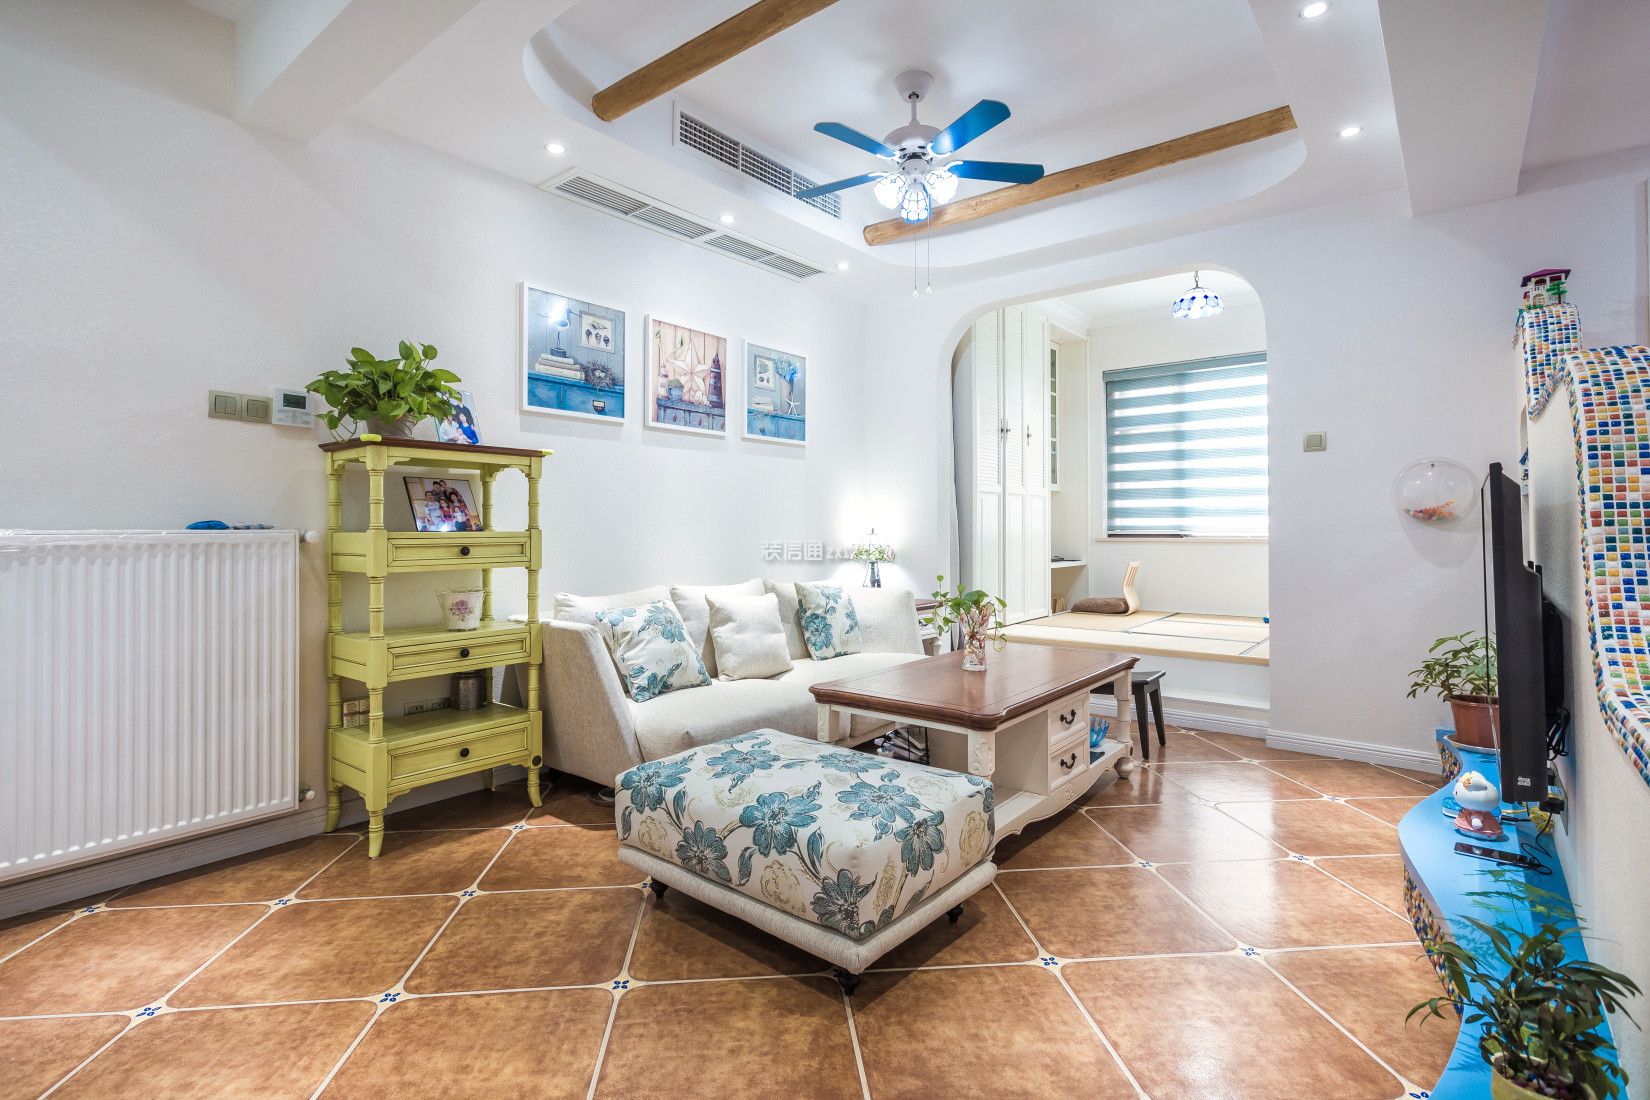 地中海风格客厅装修效果图大全 地中海风格客厅家具